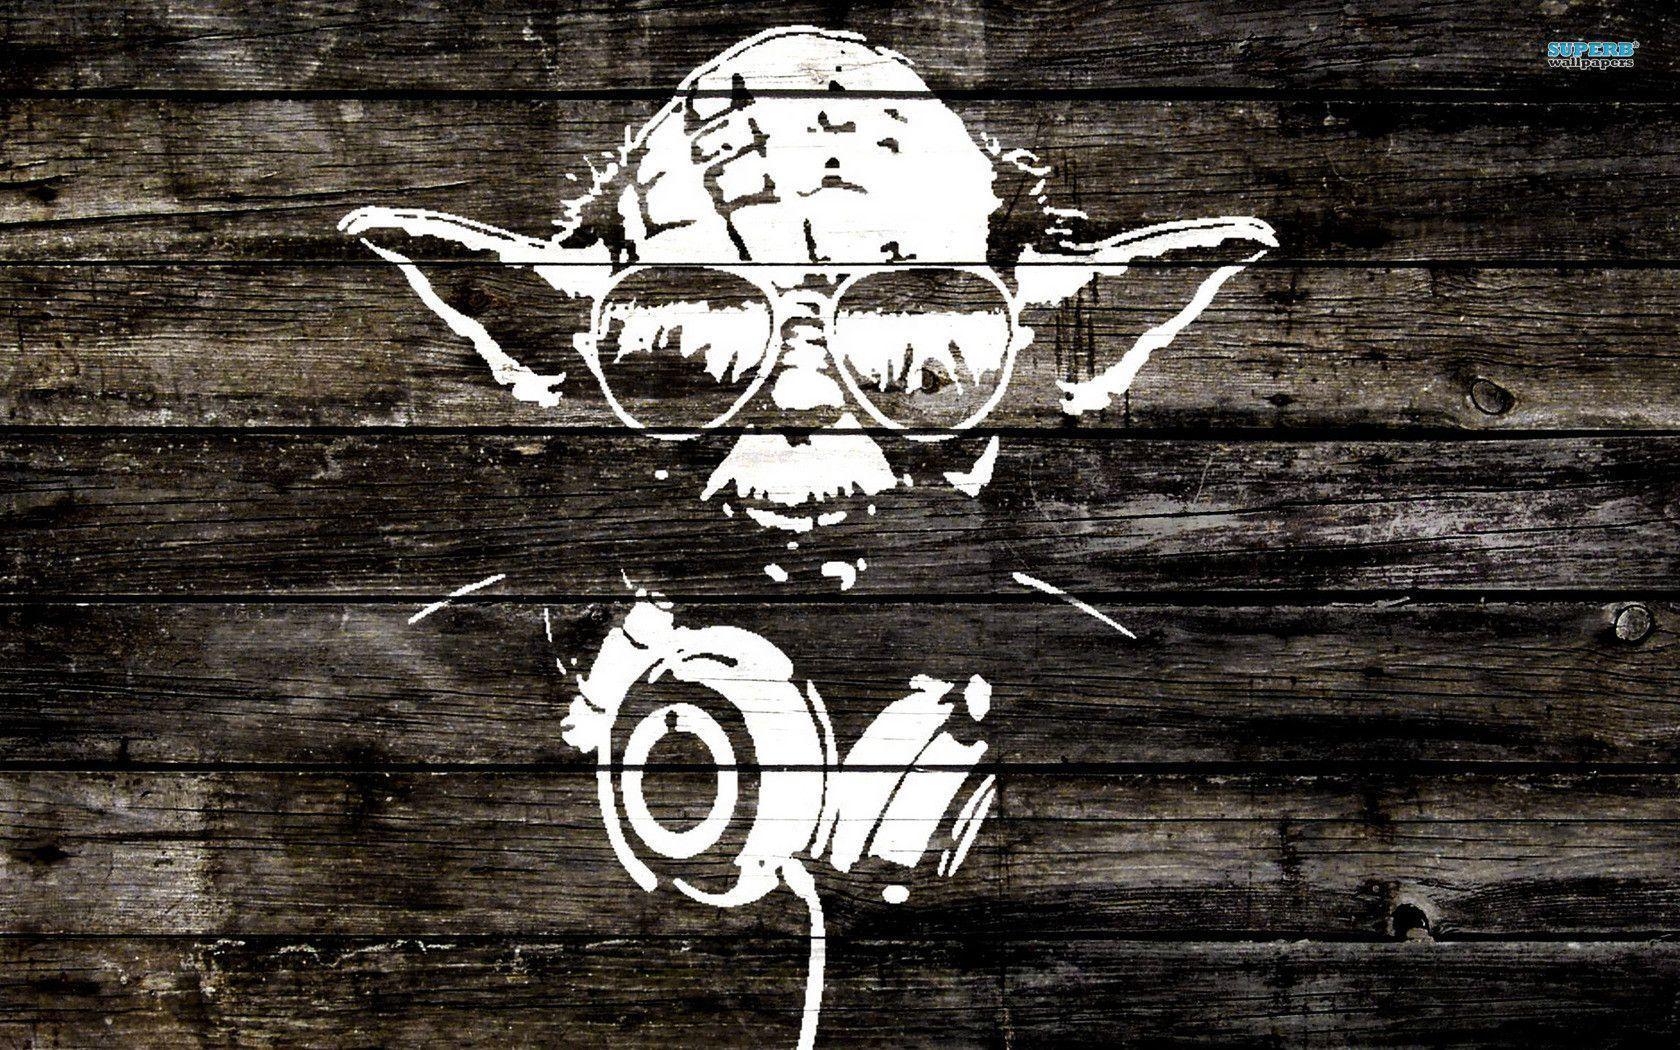 Yoda wood graffiti wallpaper wallpaper - #